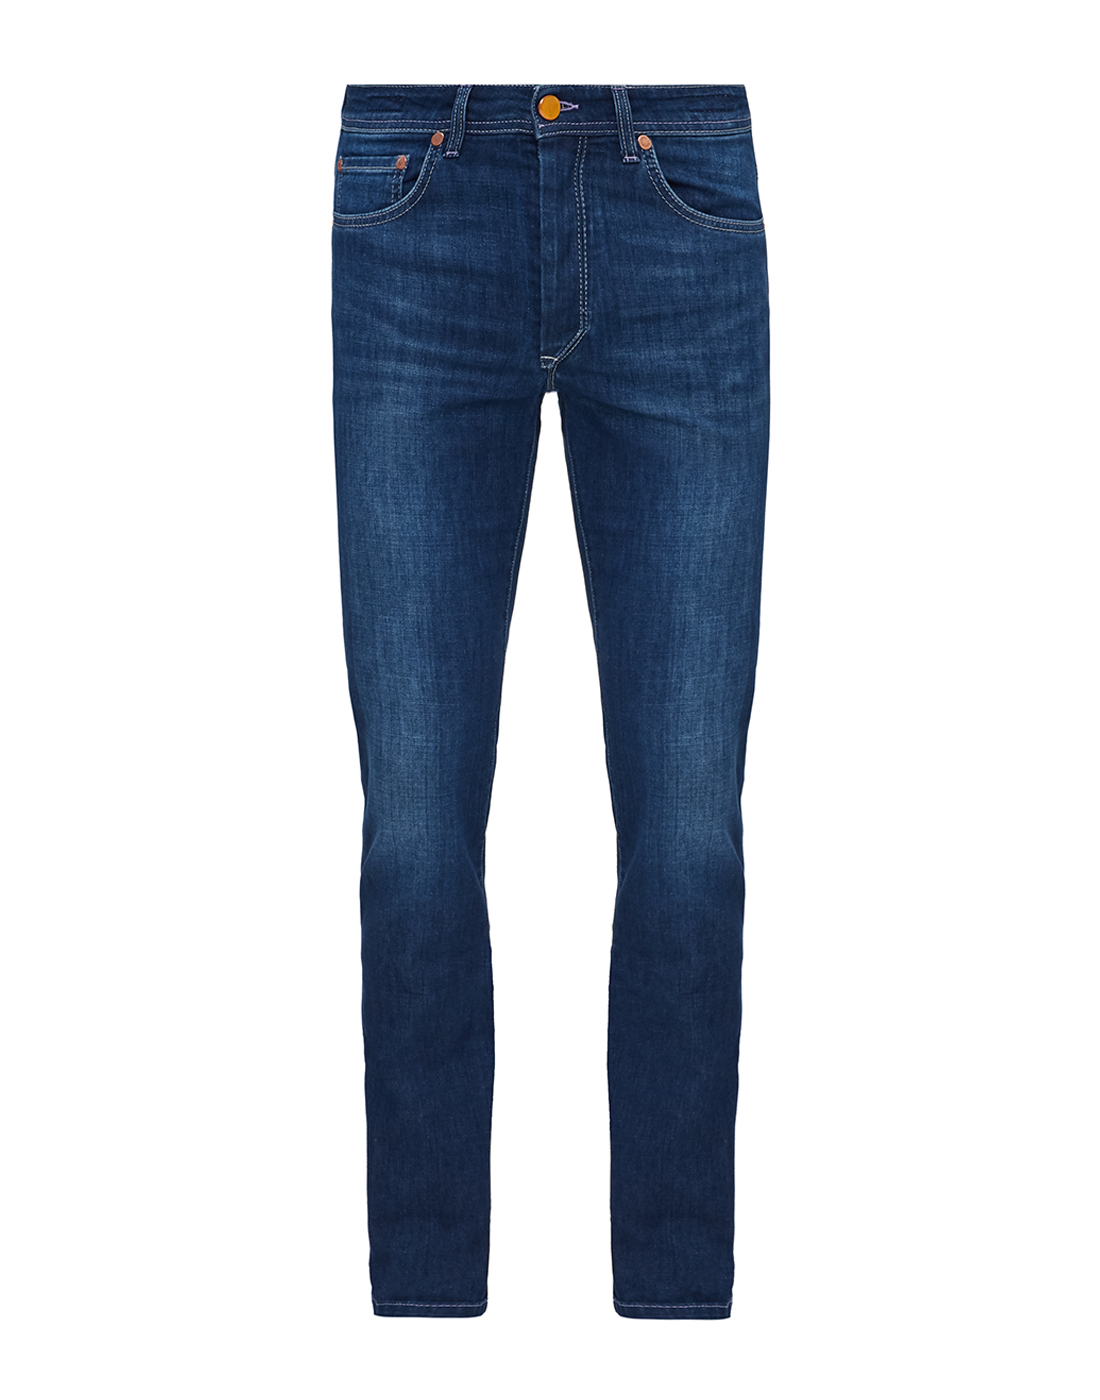 Мужские темно-синие джинсы Barba SJFIVE 12466-1